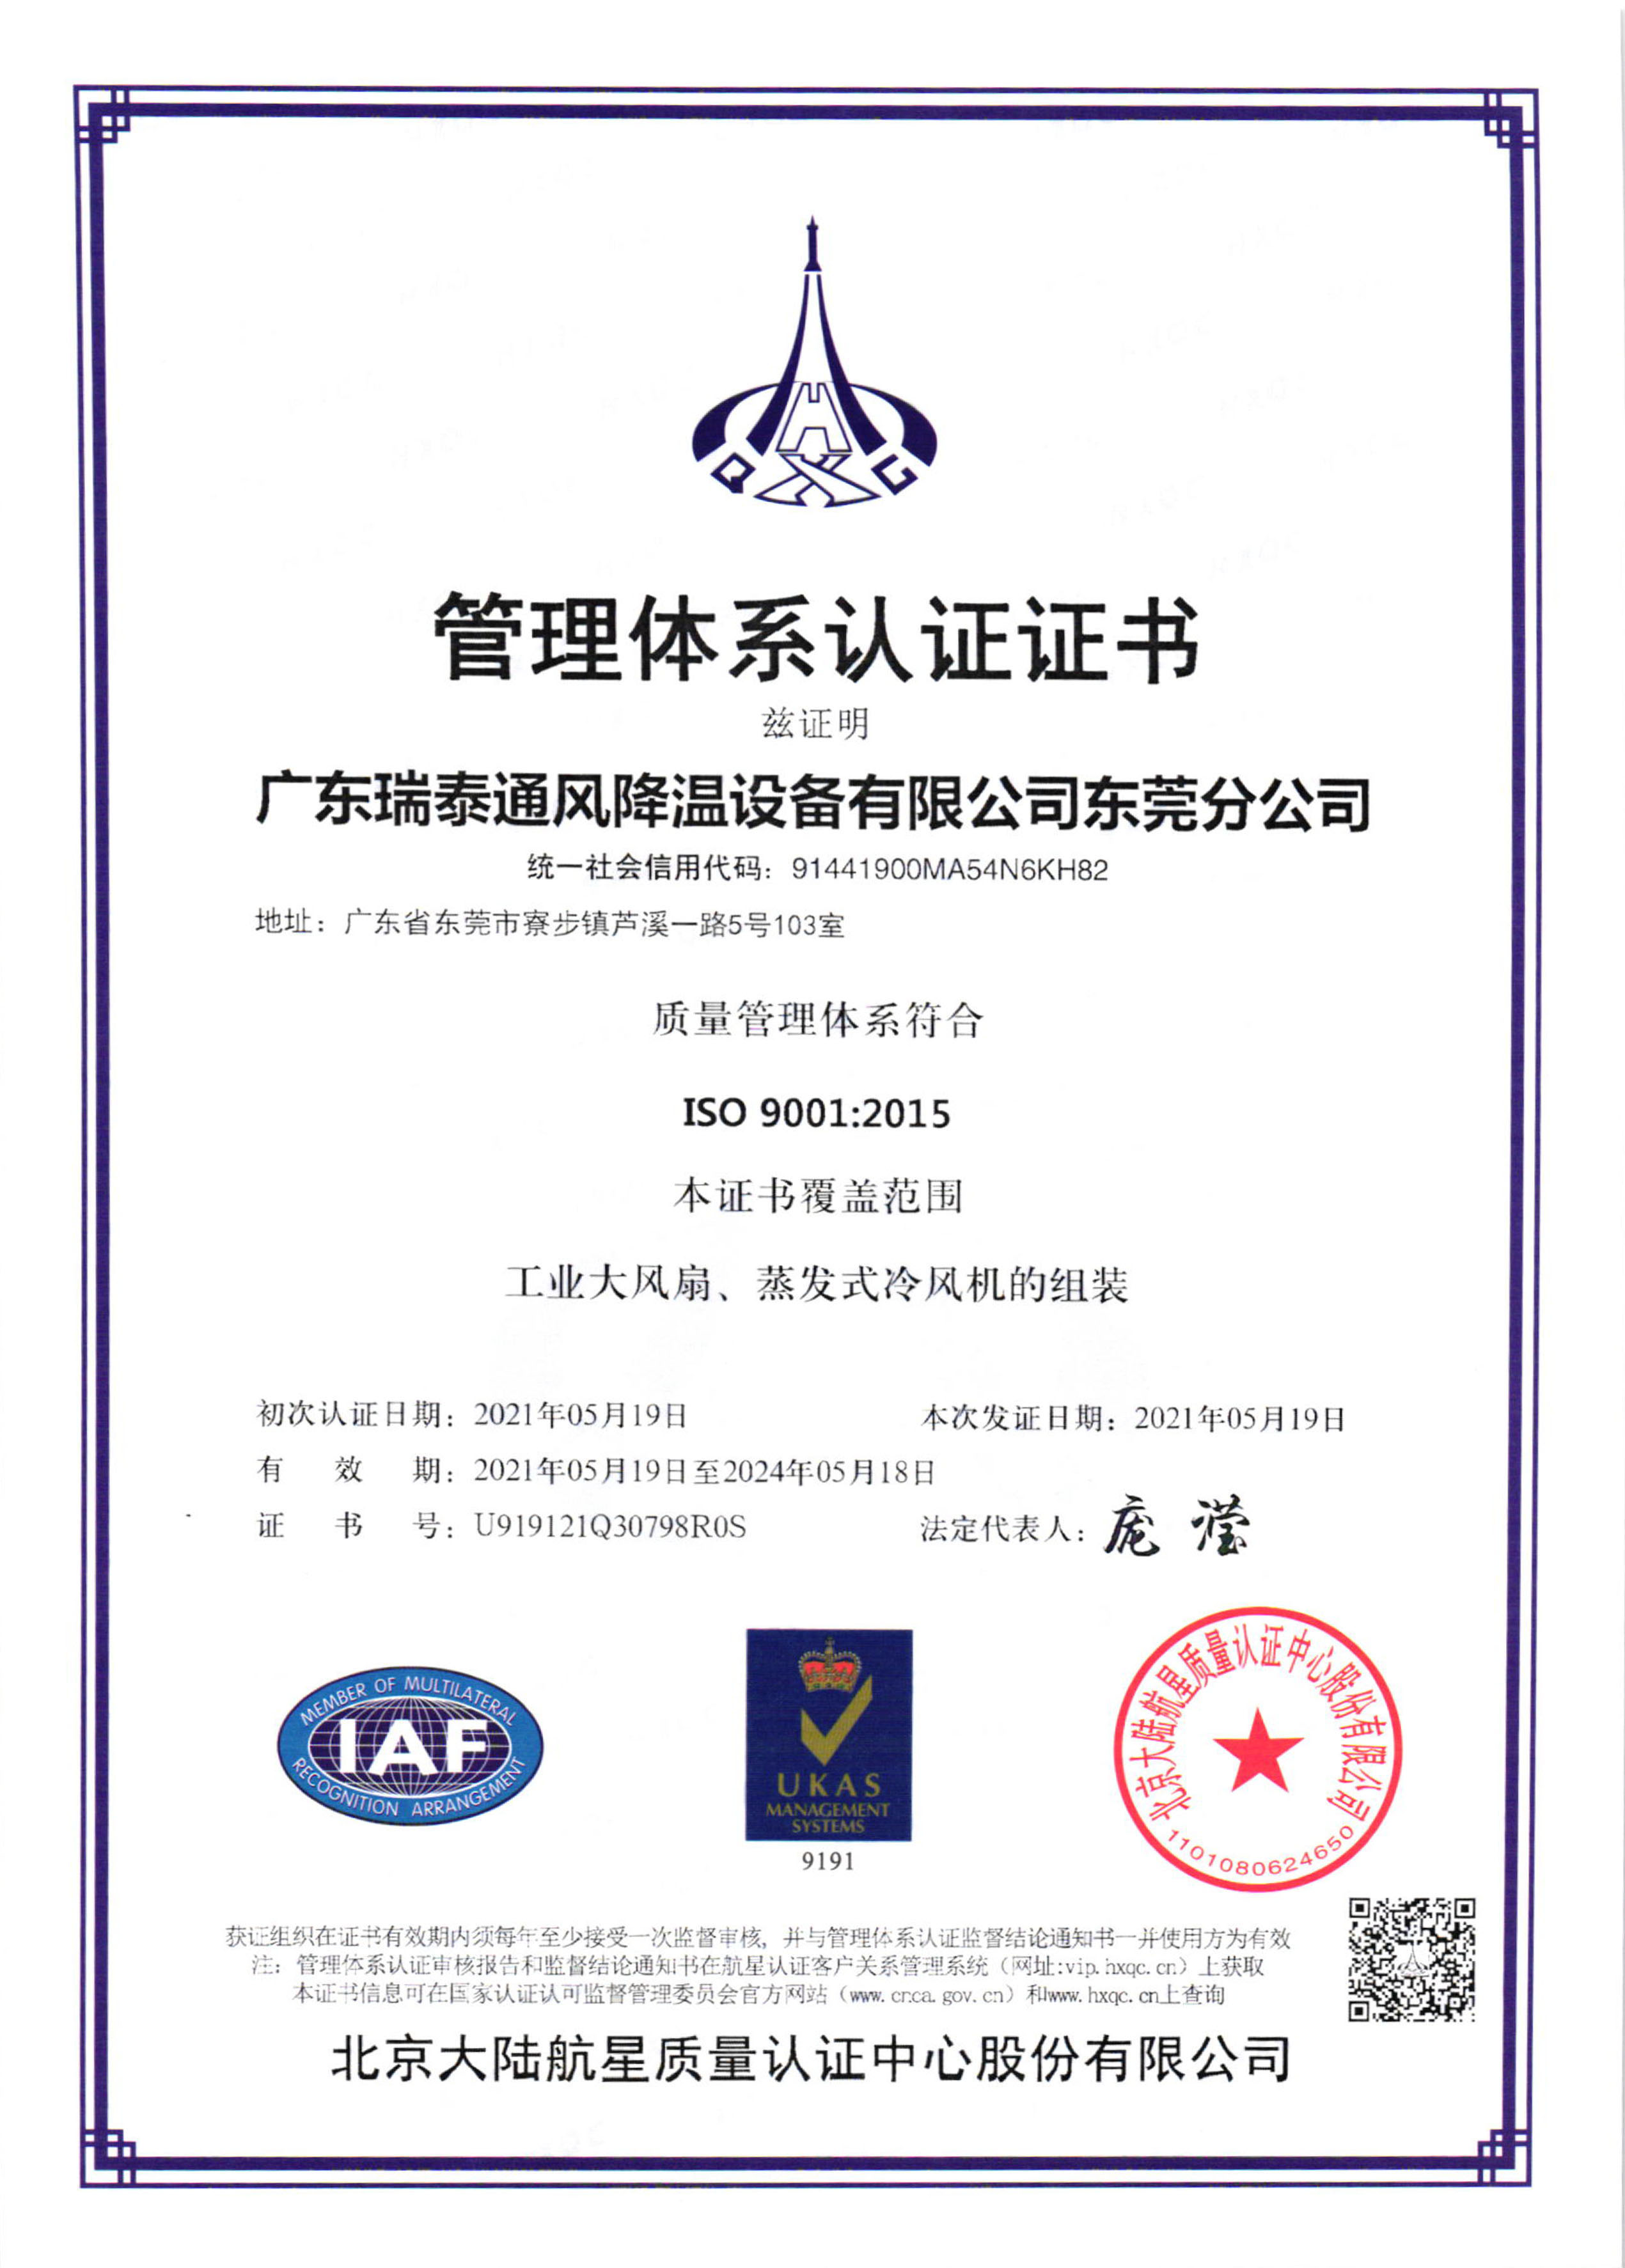 瑞泰風ISO9001:2015證書